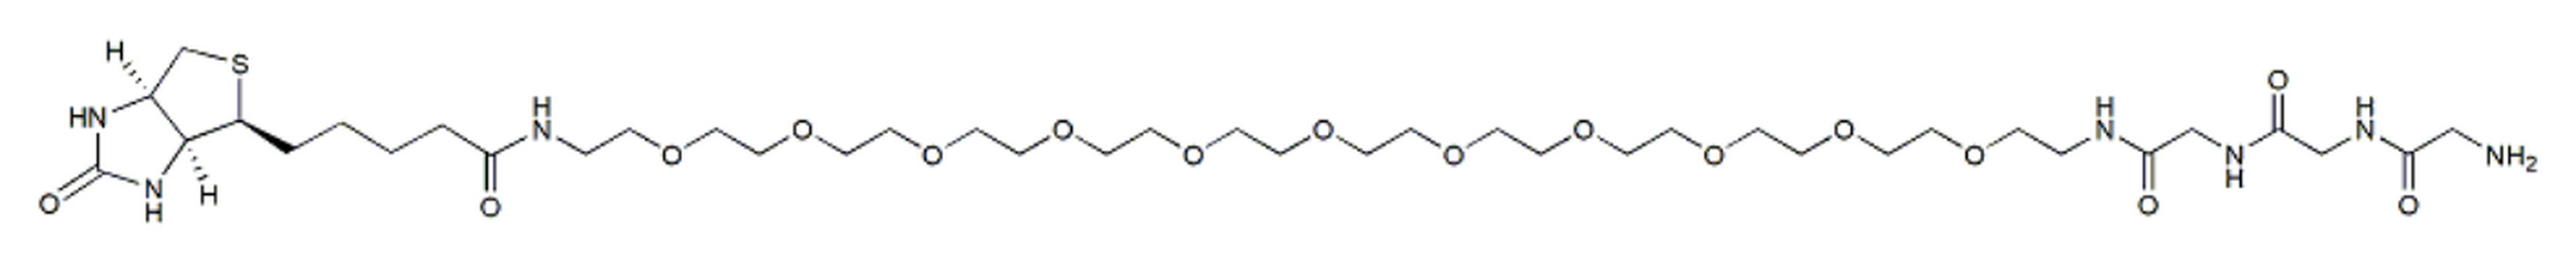 Biotin-PEG11-Gly-Gly-Gly-amine